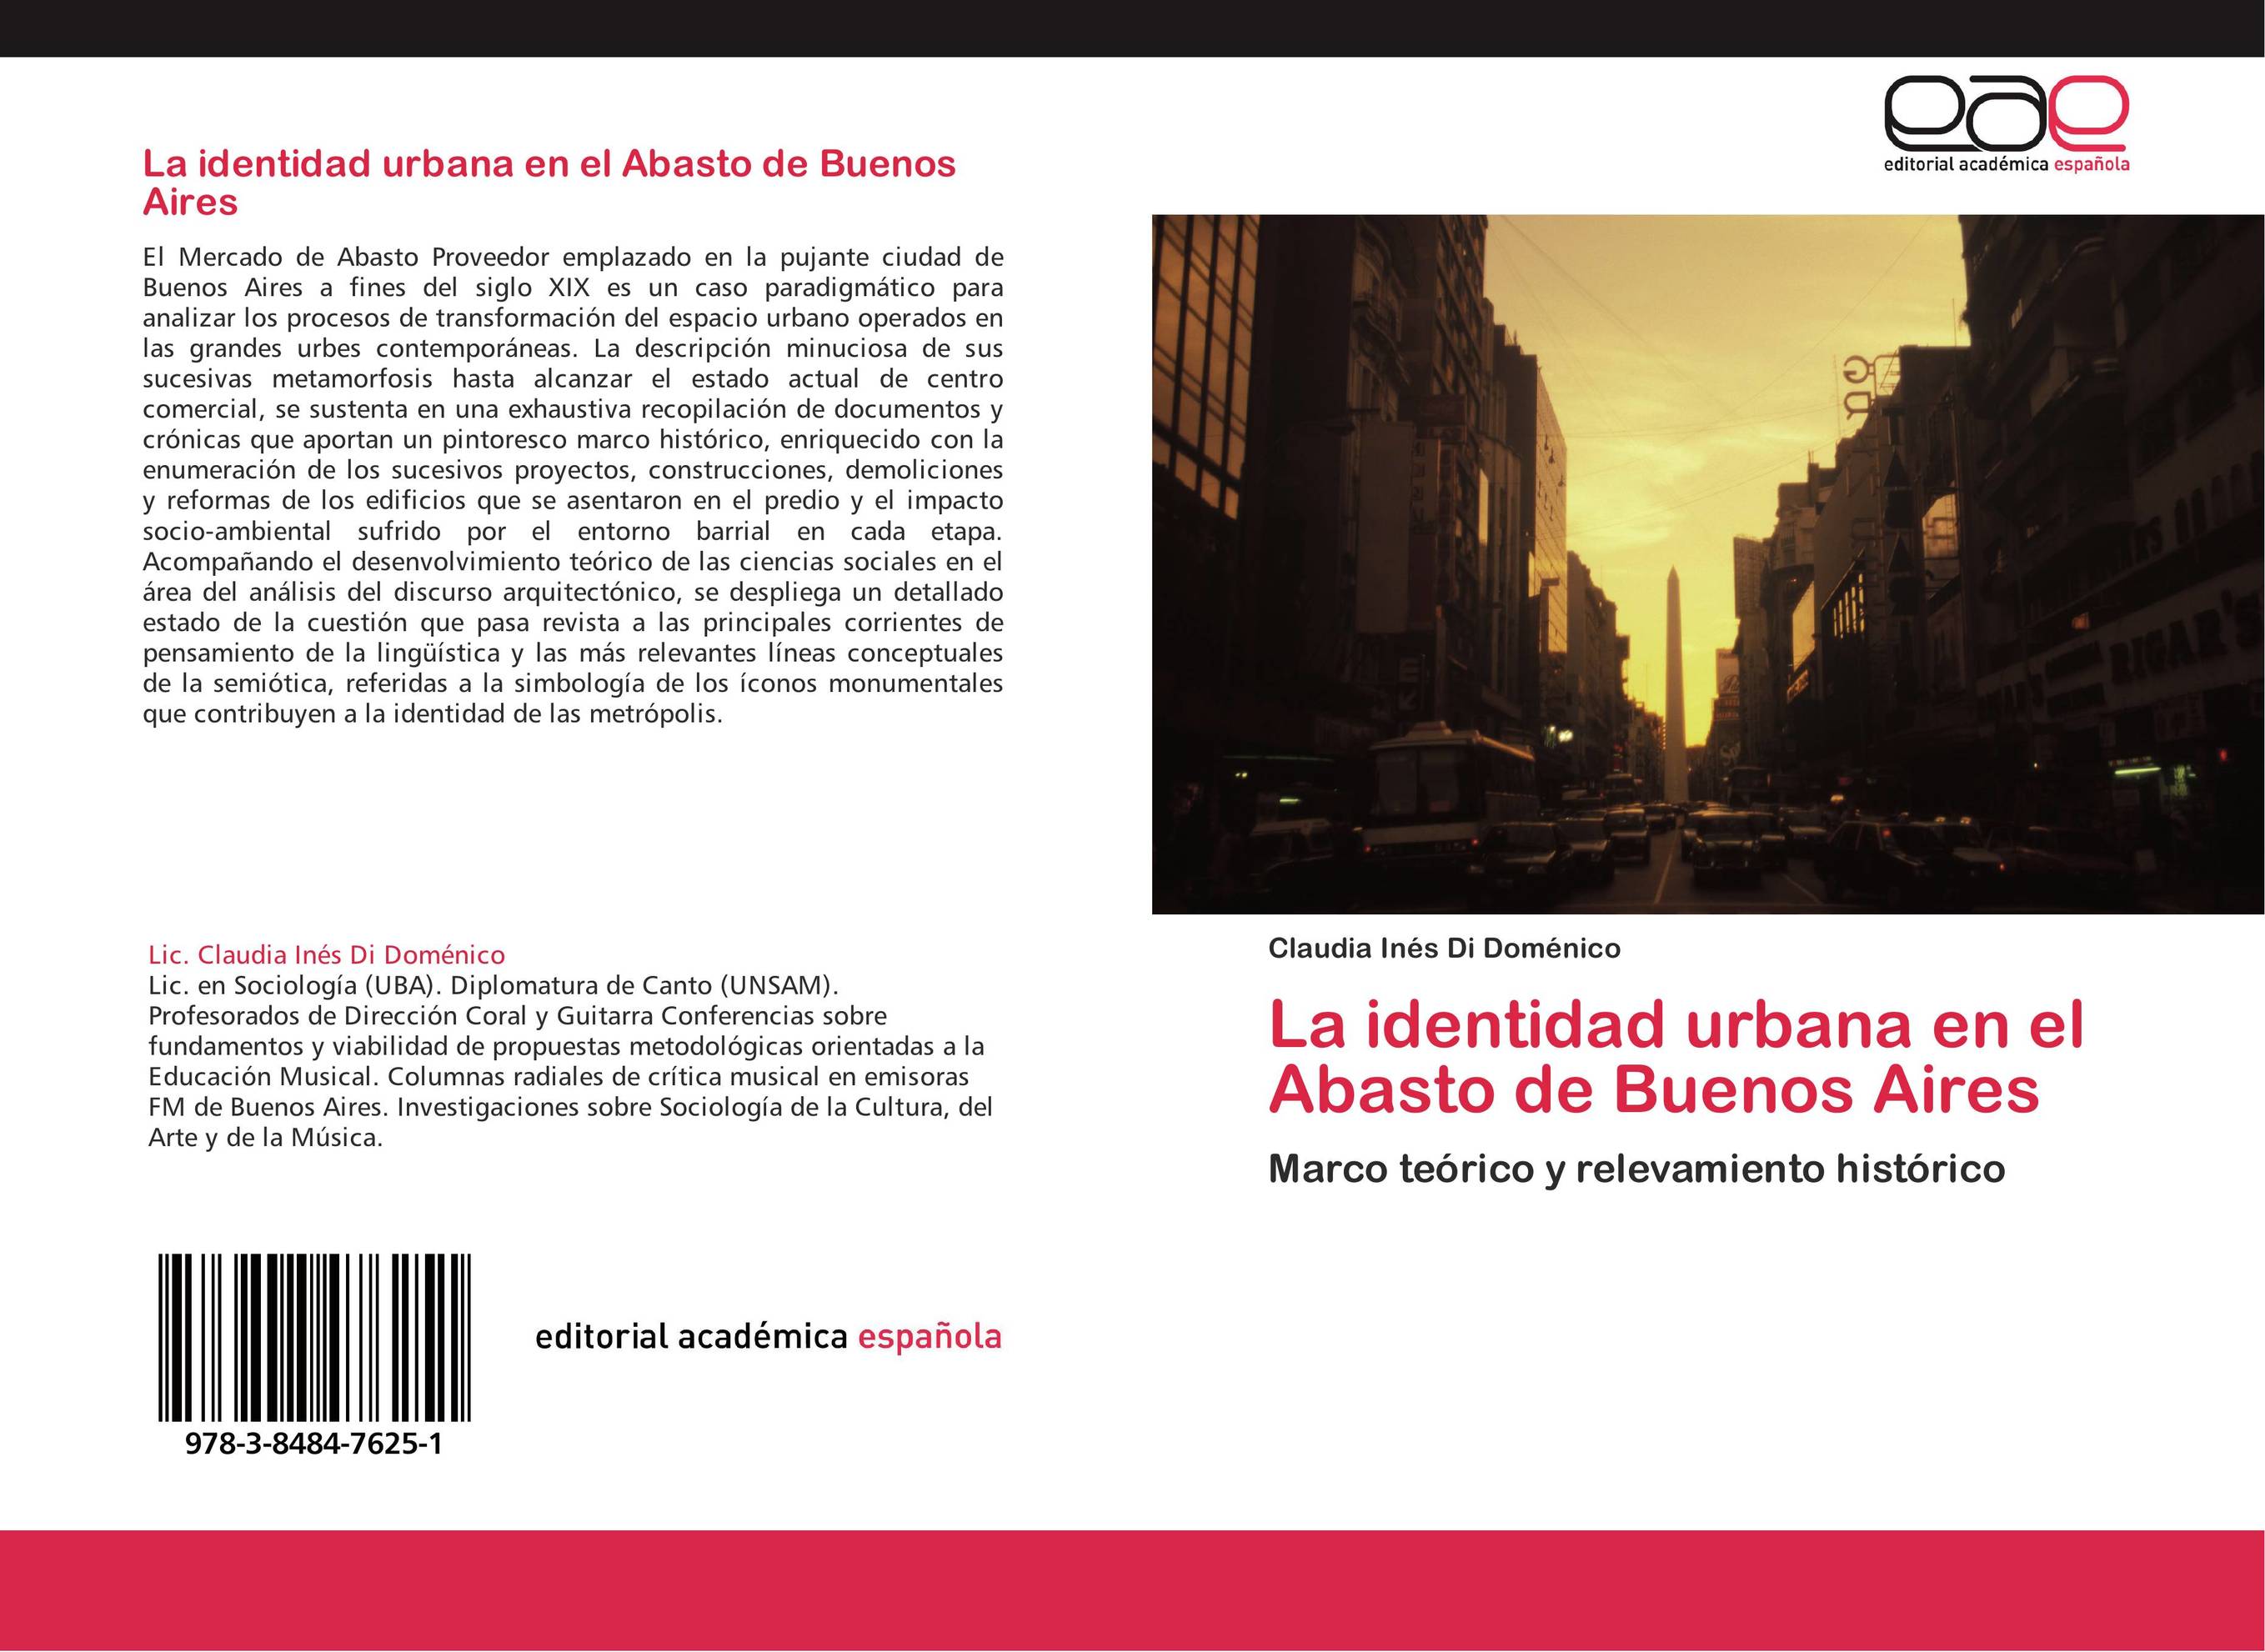 La identidad urbana en el Abasto de Buenos Aires